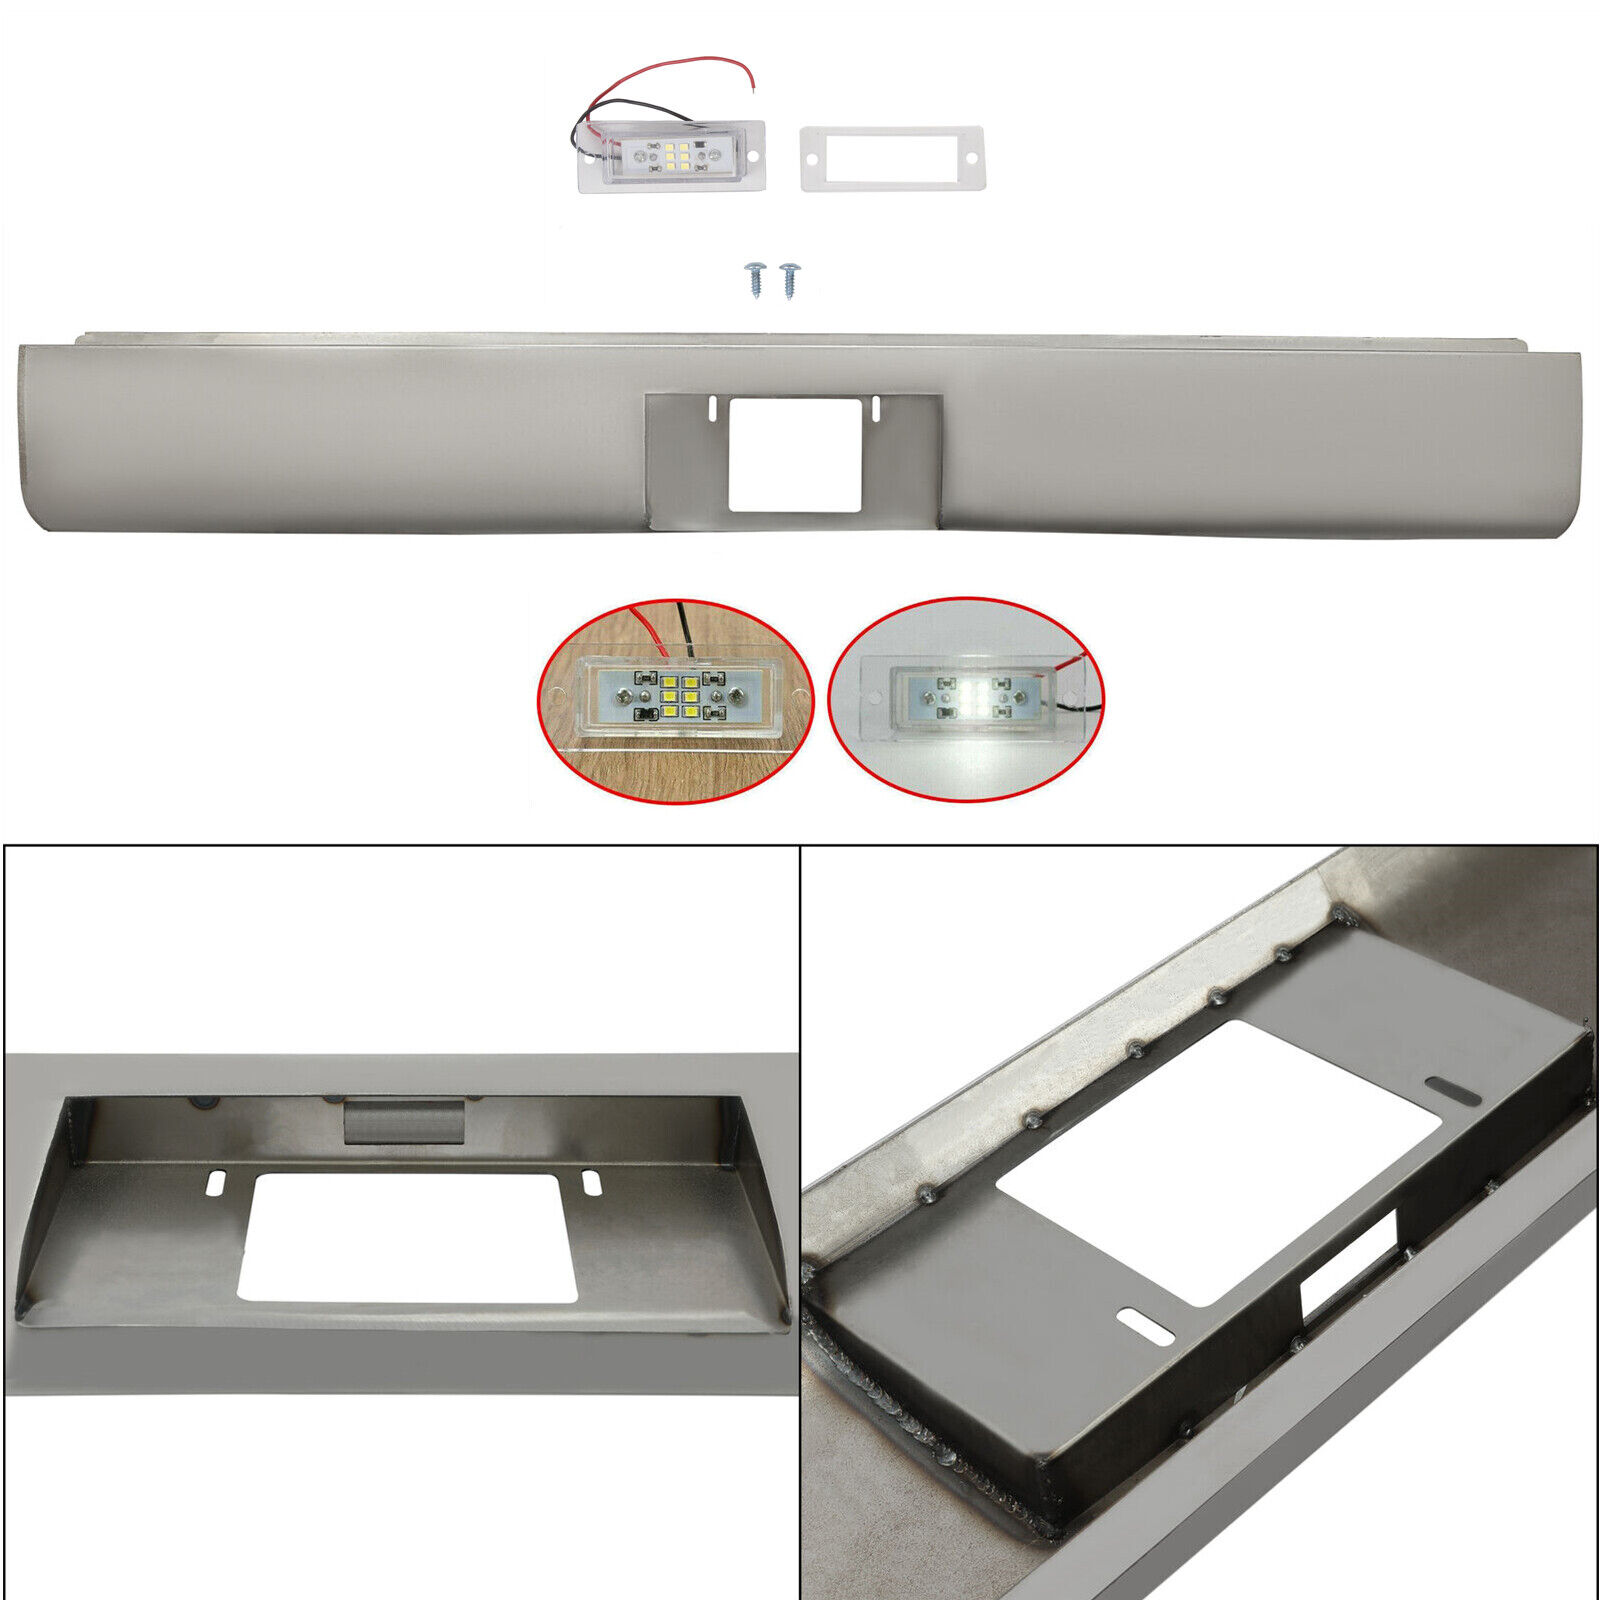 FOR 72-93 DODGE D100/150/250 PICKUP Steel Rollpan W/Plate box Center & LED Light